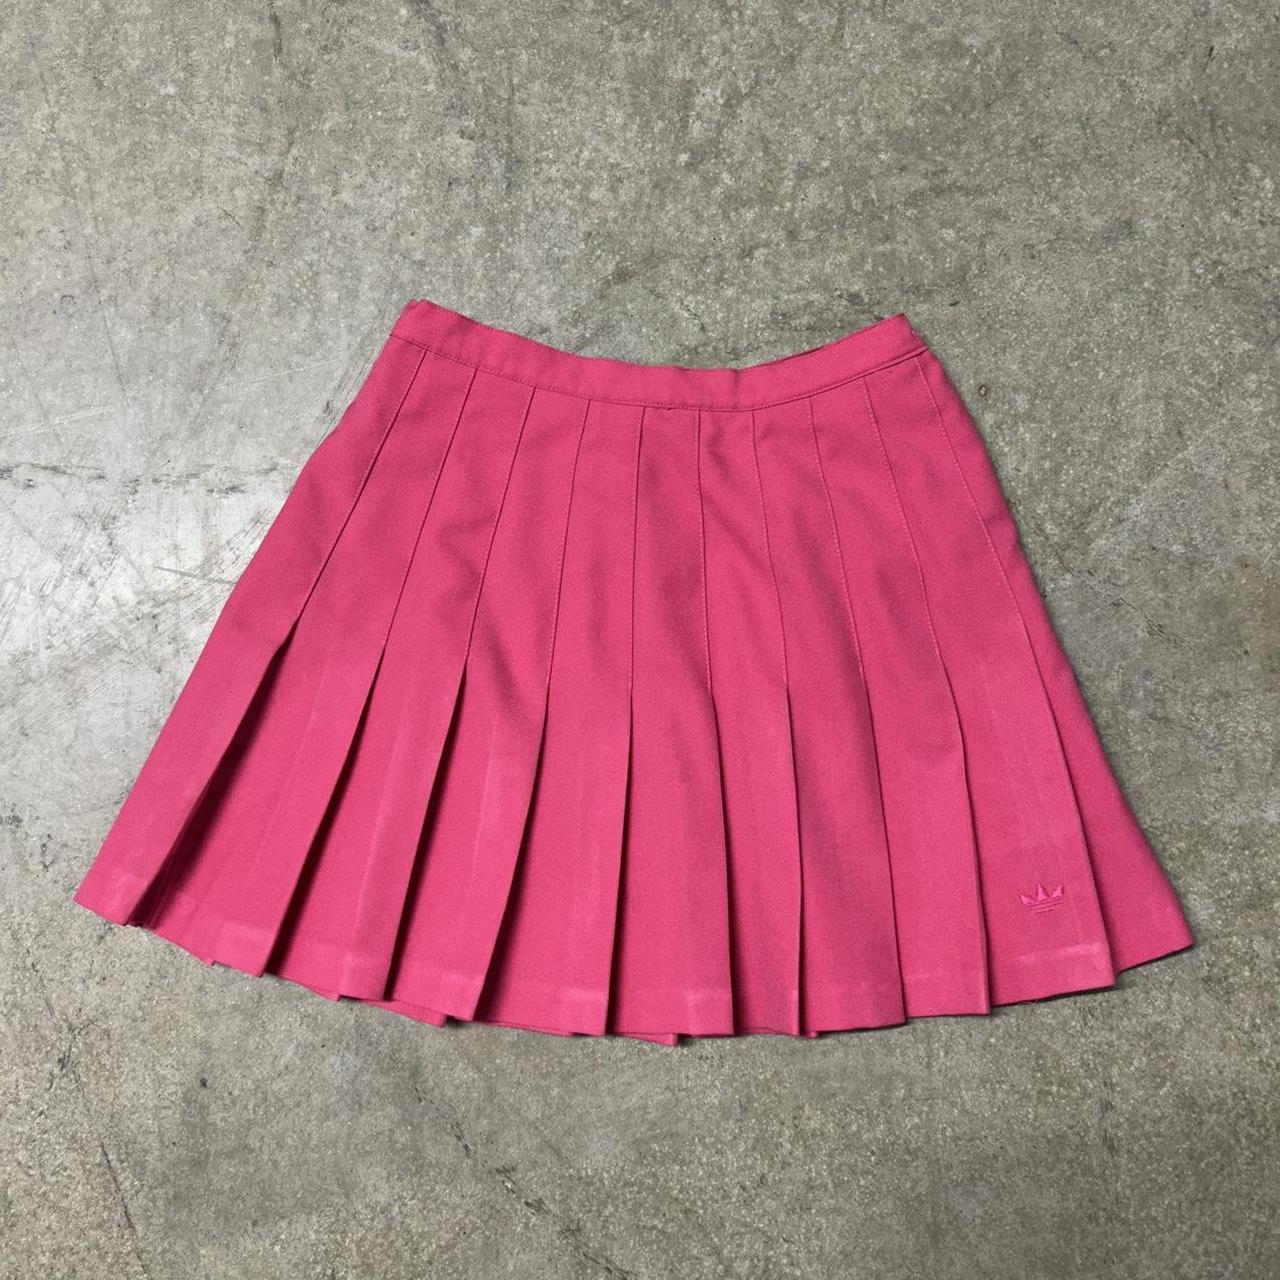 Adidas Women's Pink Skirt